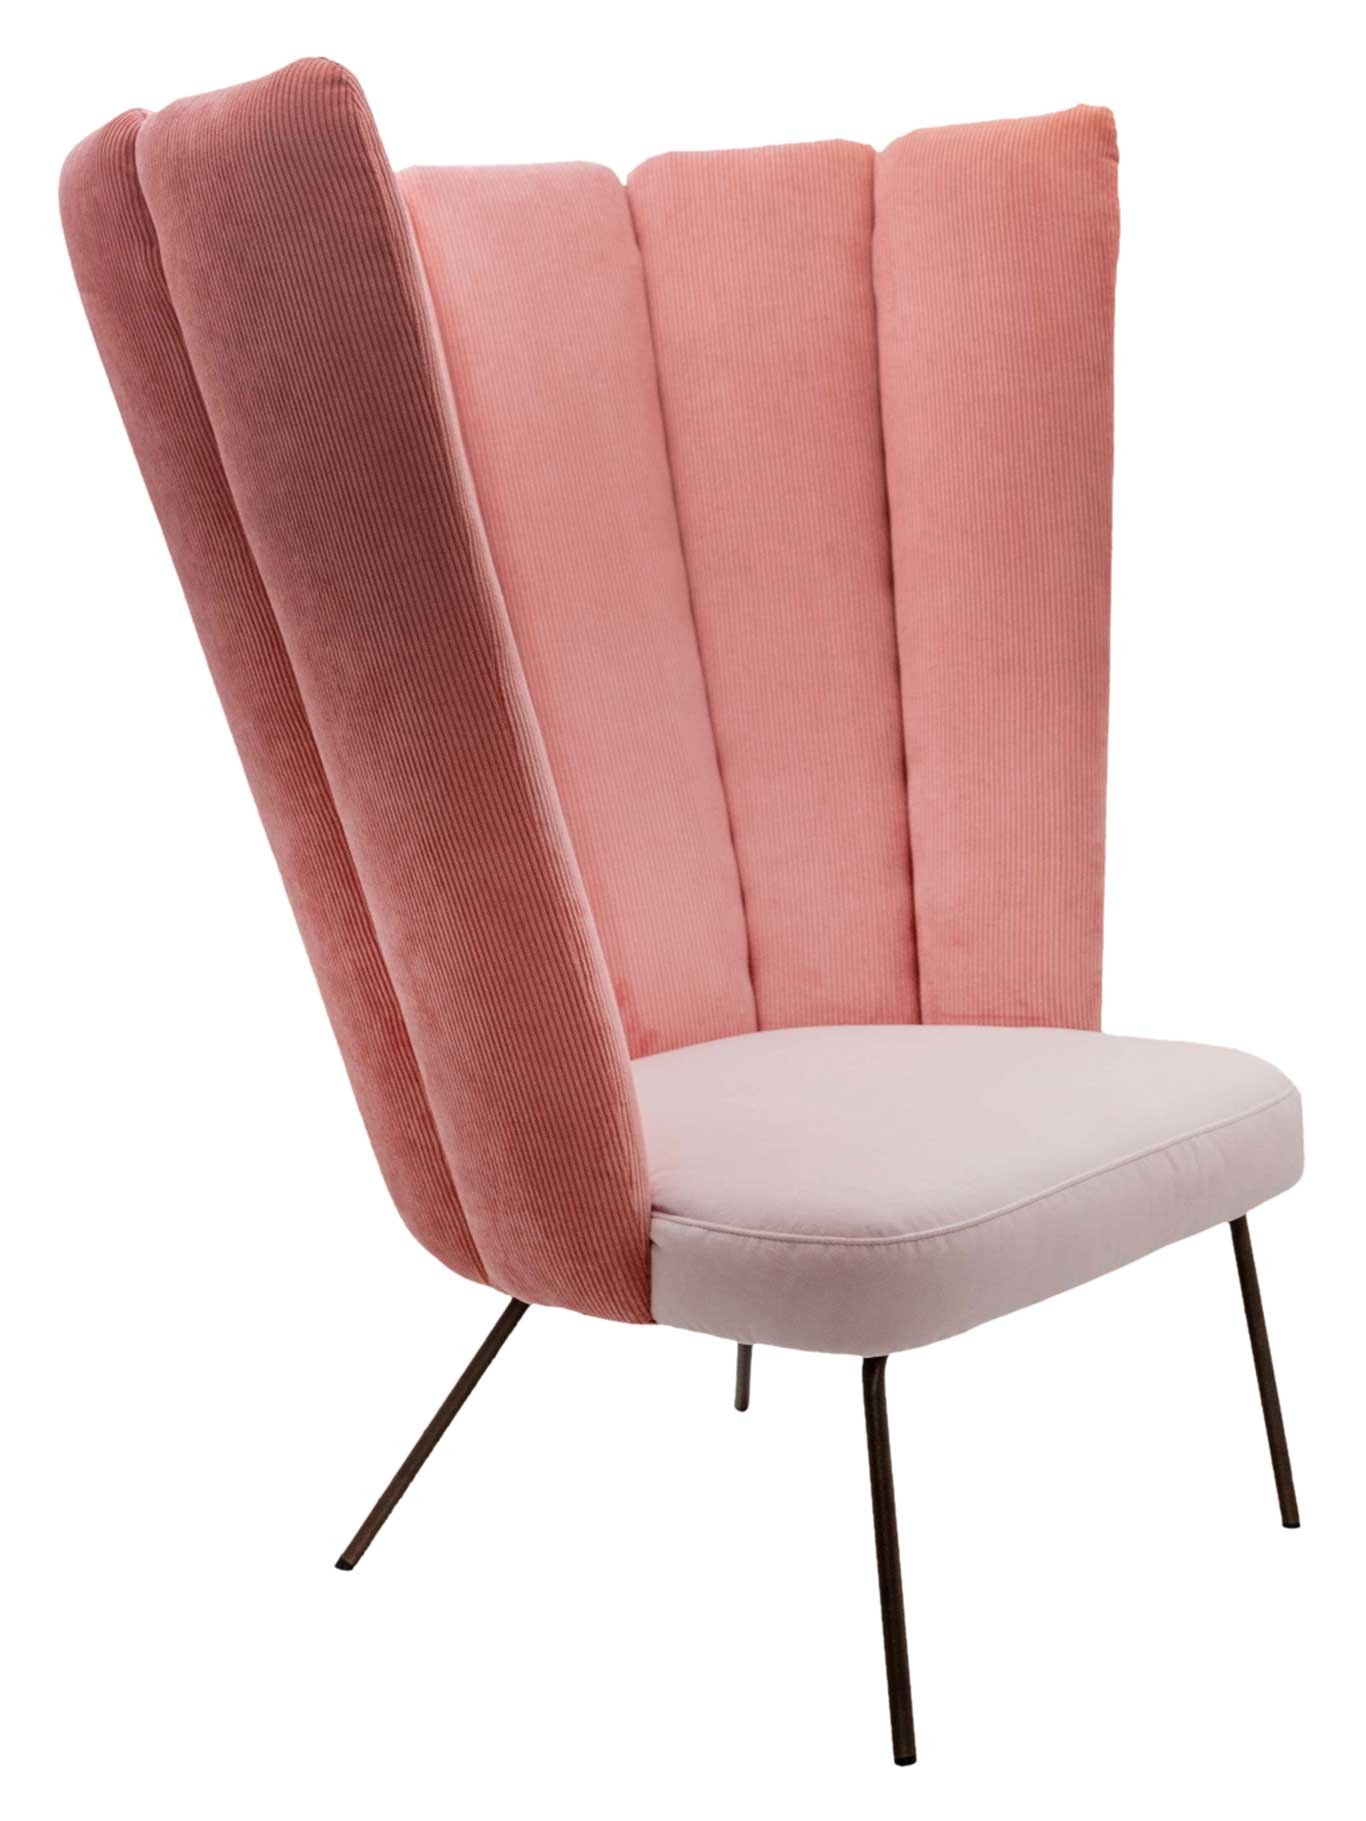 Der Lounge Chair »Gaia Calice« wirkt im Salon im Doppelpack und gegenüber platziert wie ein wahres Style-Statement. Von Designerin Monica Armani. kff.de